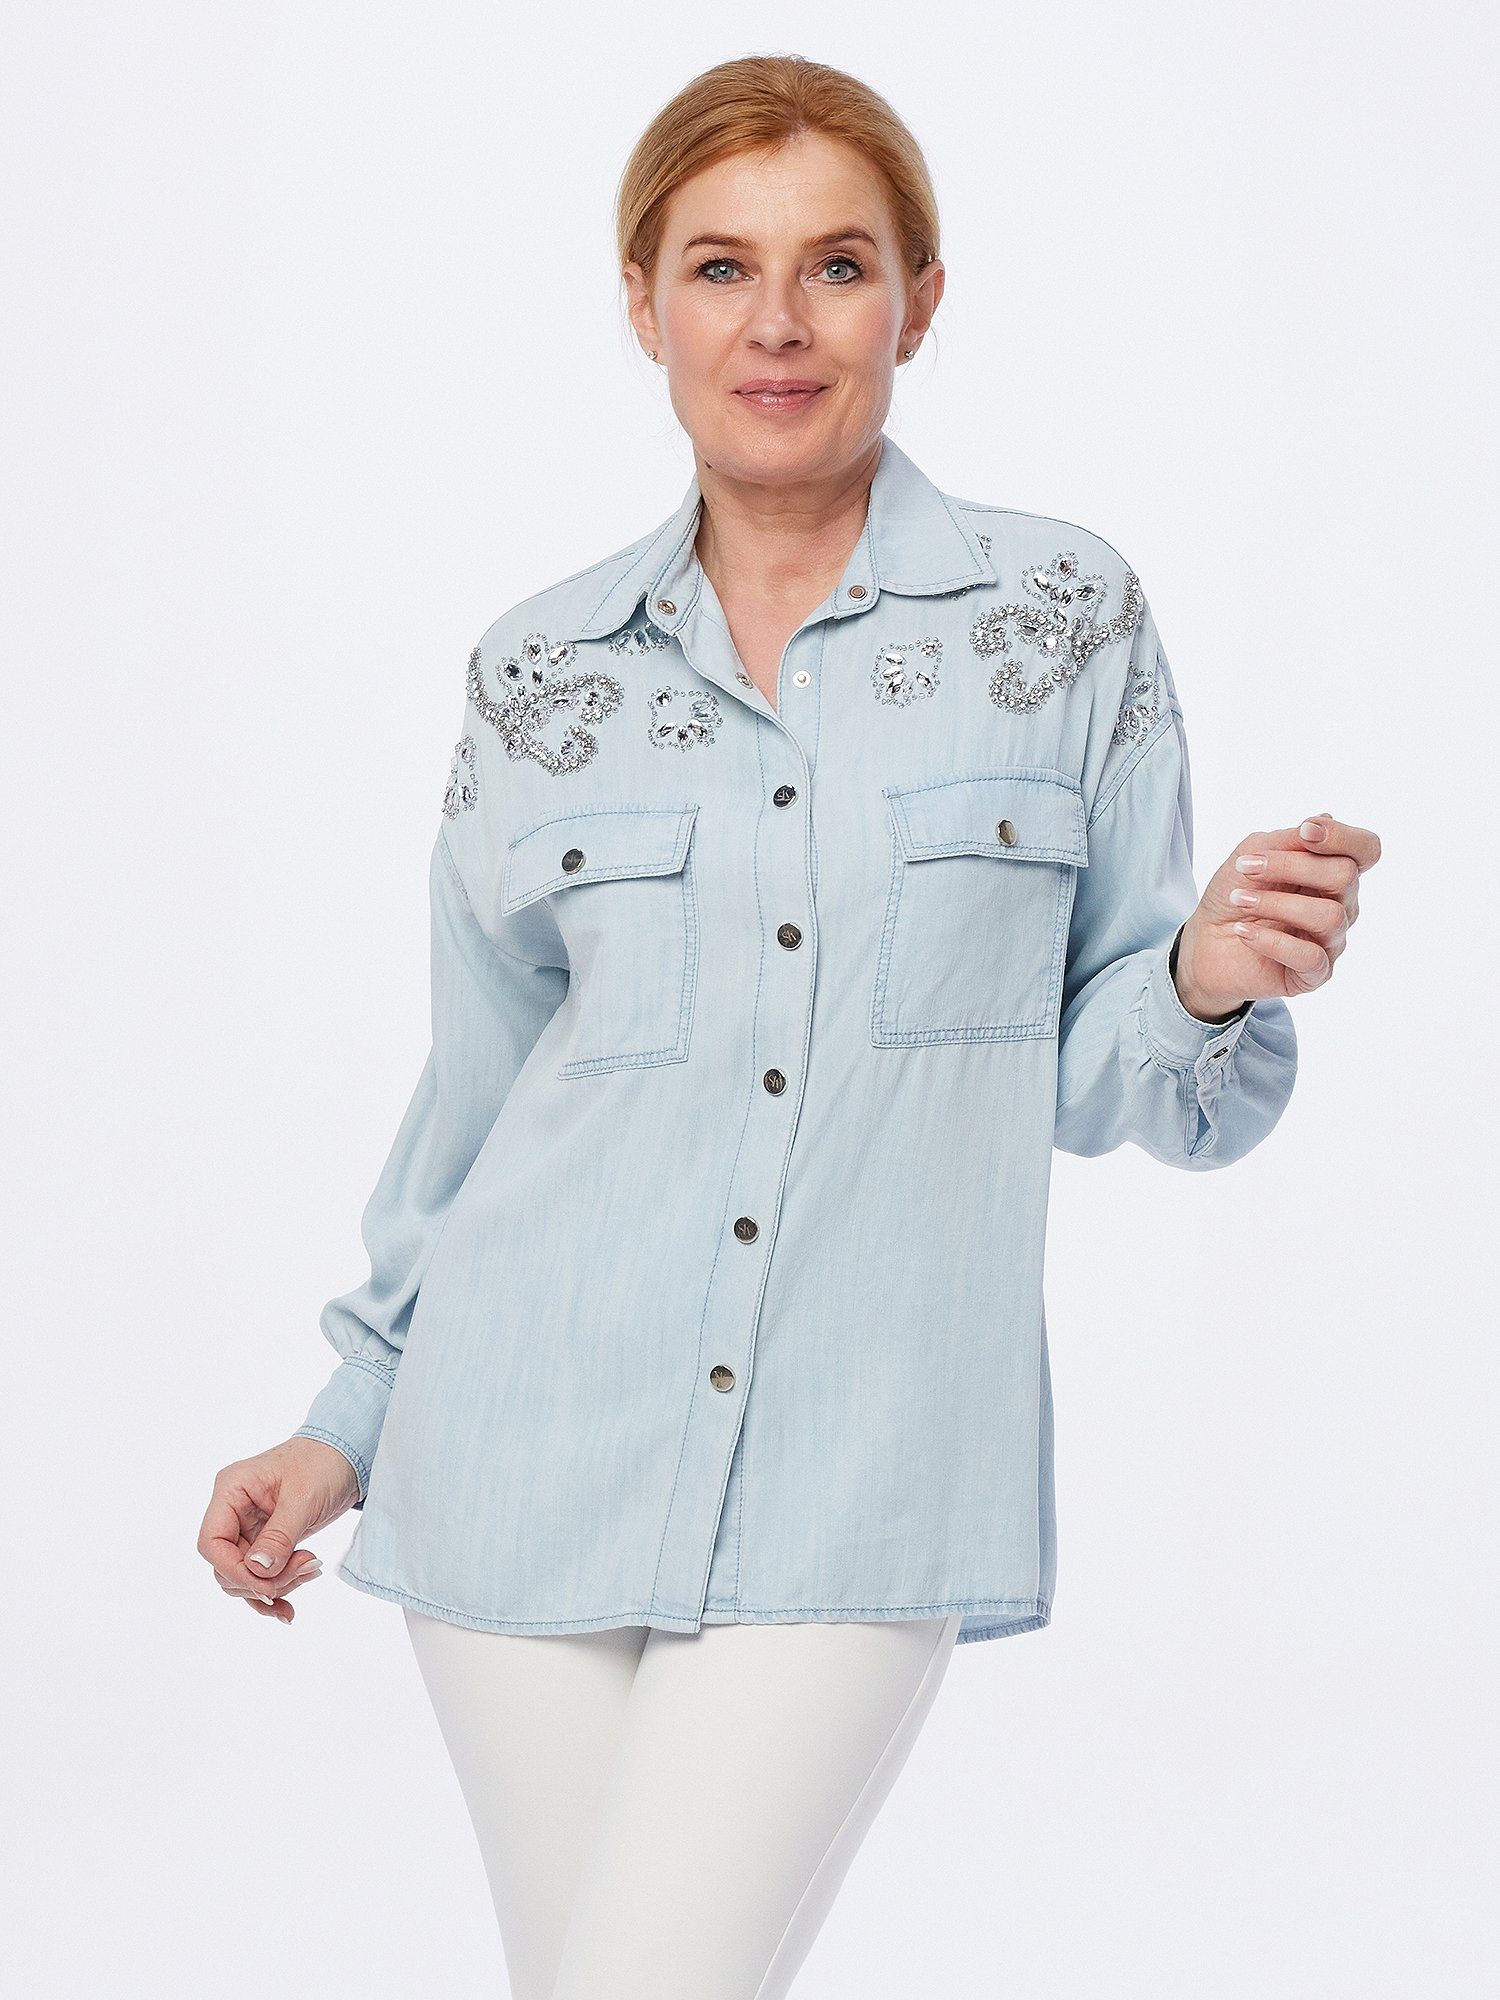 Sarah Kern Jeansbluse Hemd weit mit Zierstein-Veredlung